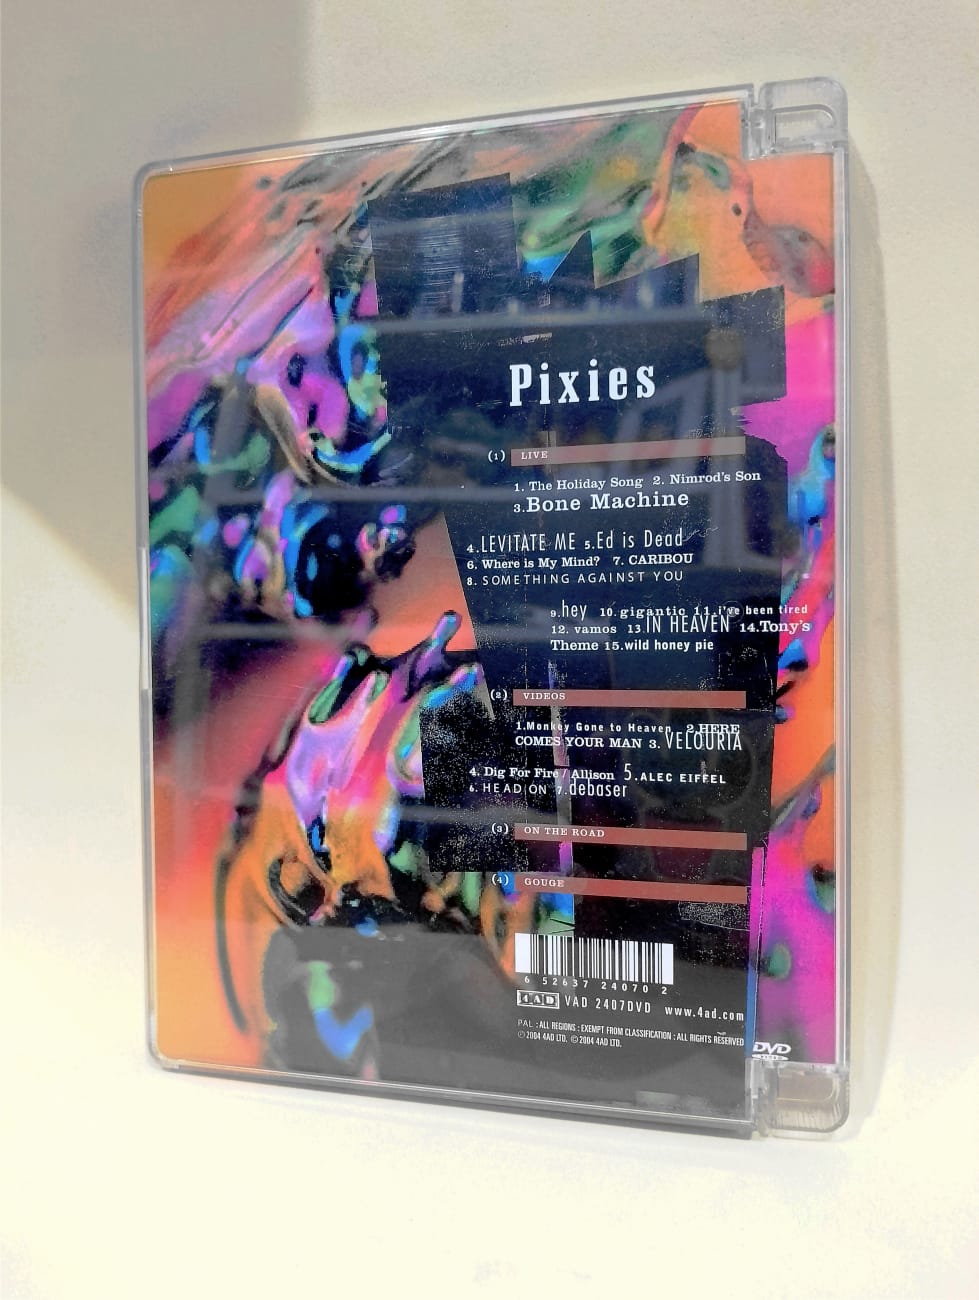 Pixies Videos DVD details back